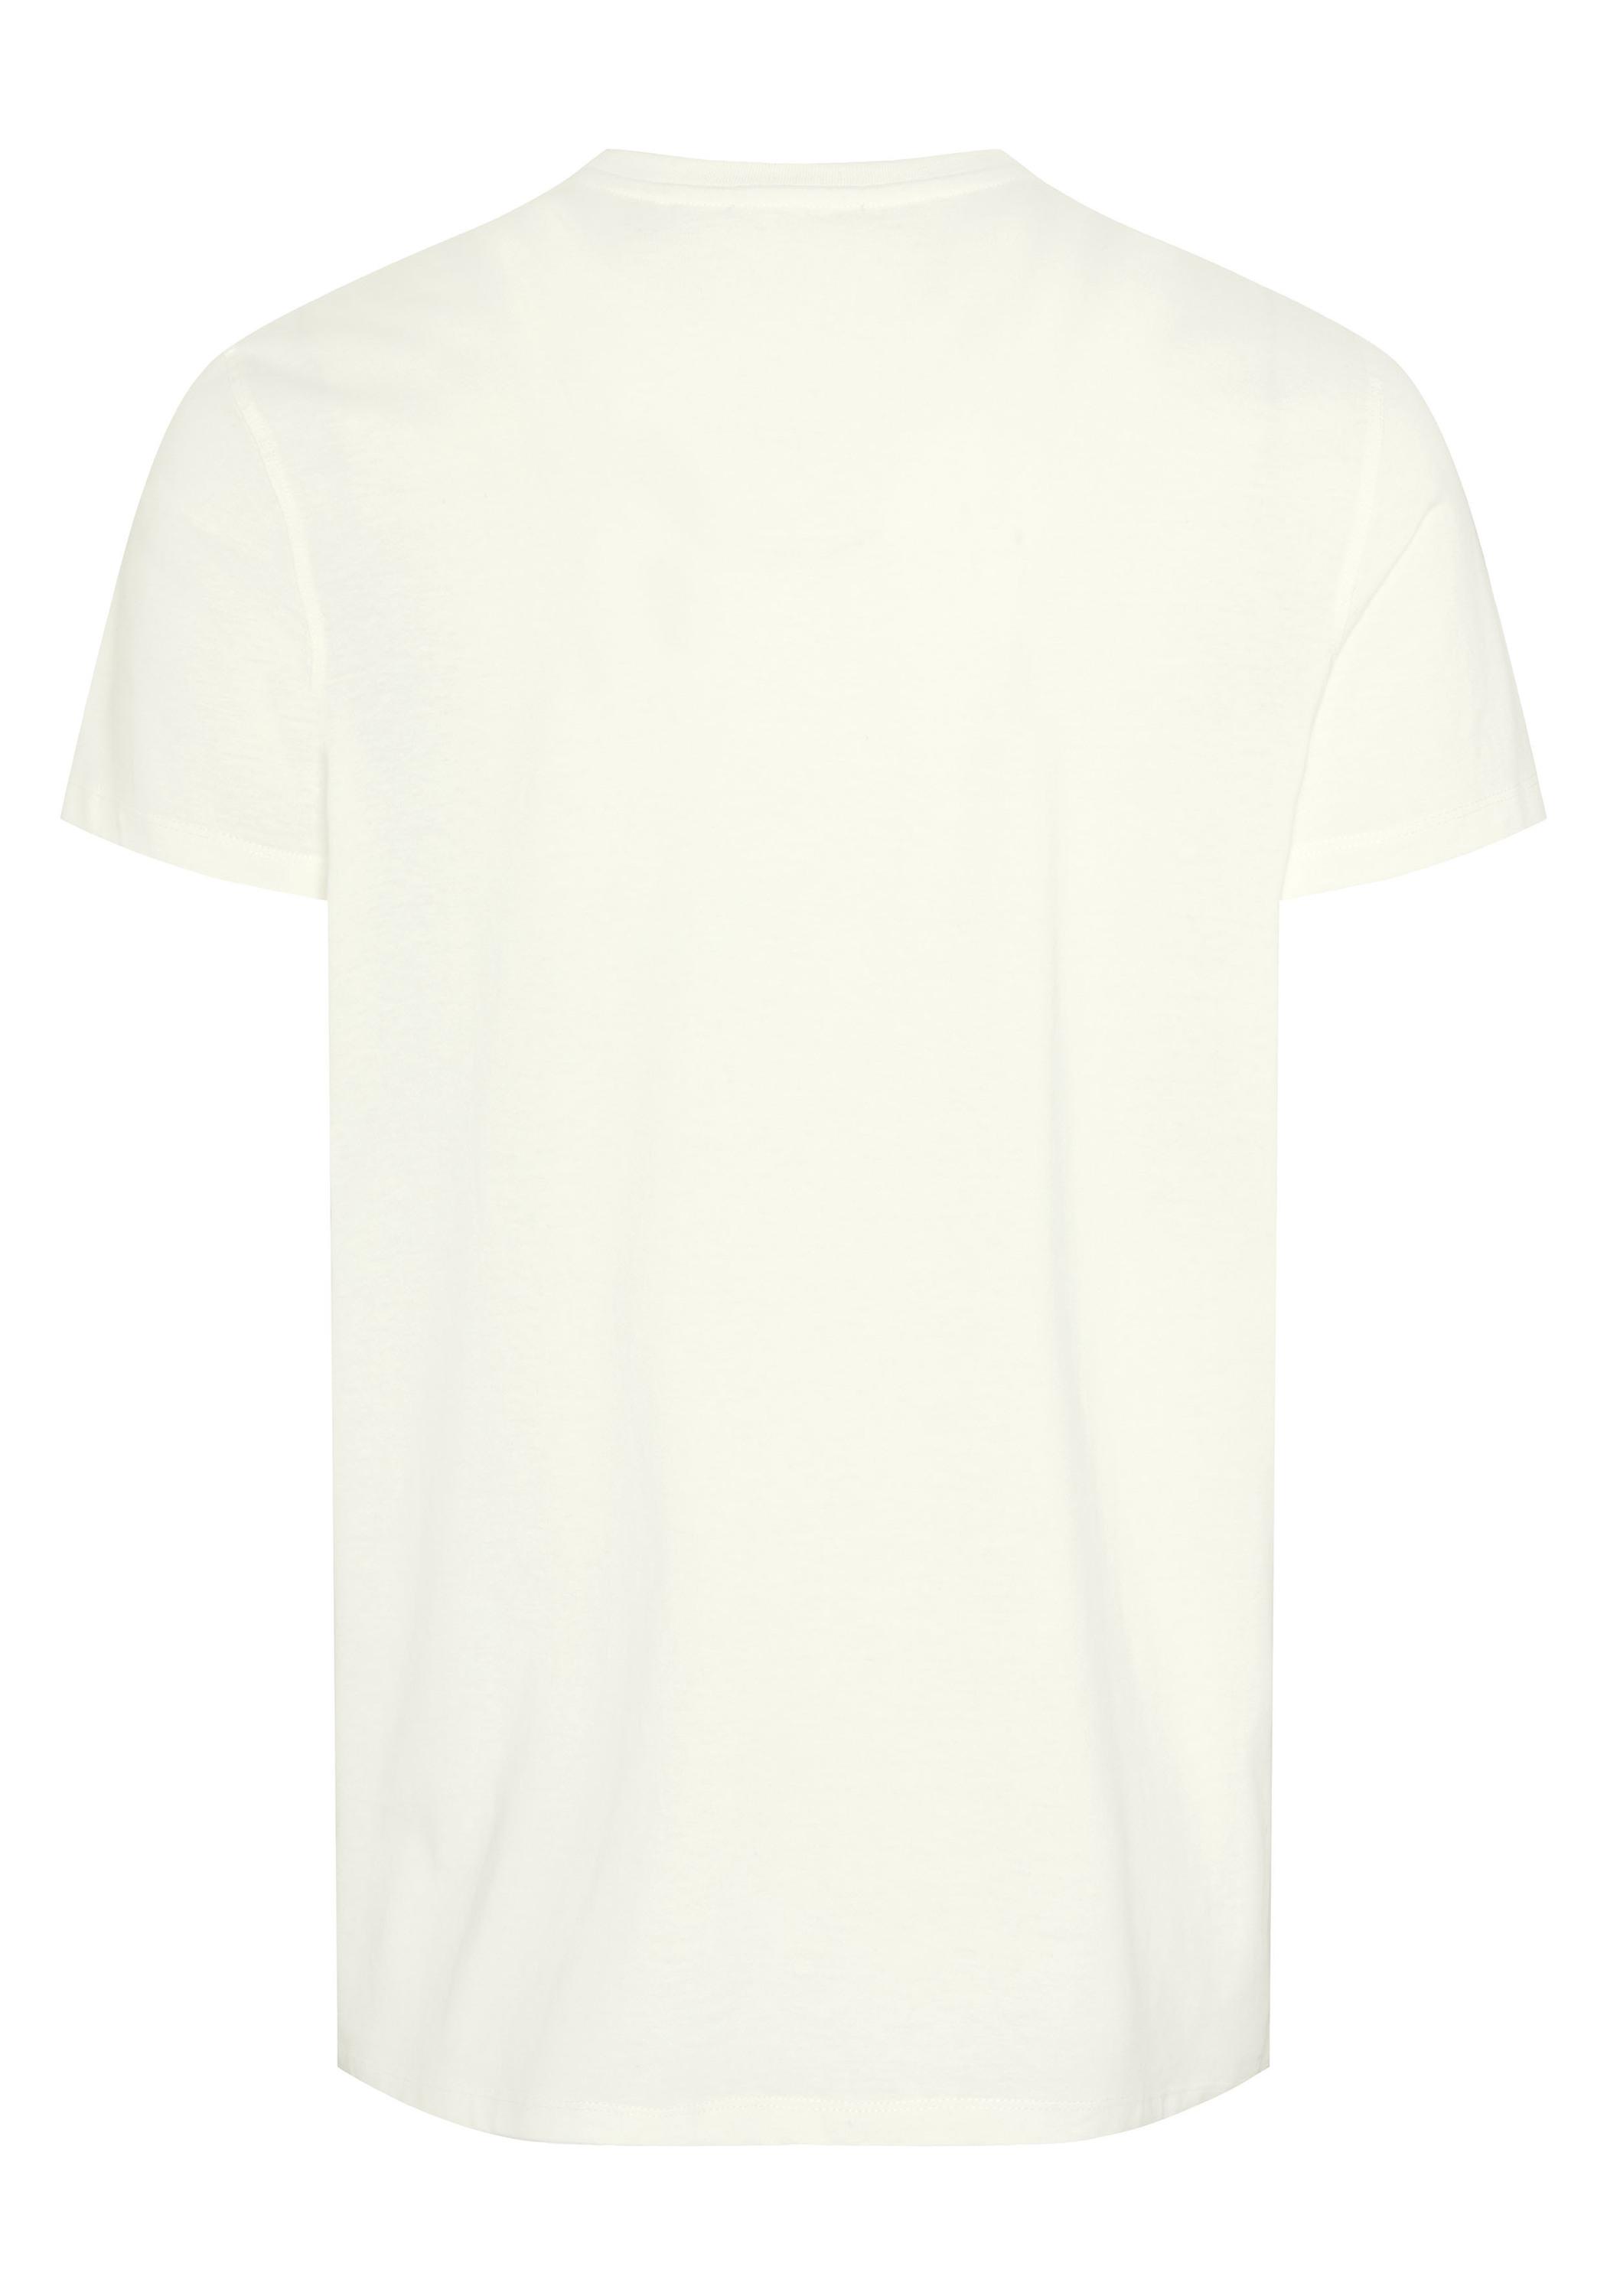 Chiemsee T-Shirt T-Shirt Herren von Star kaufen SportScheck Shop im Online White